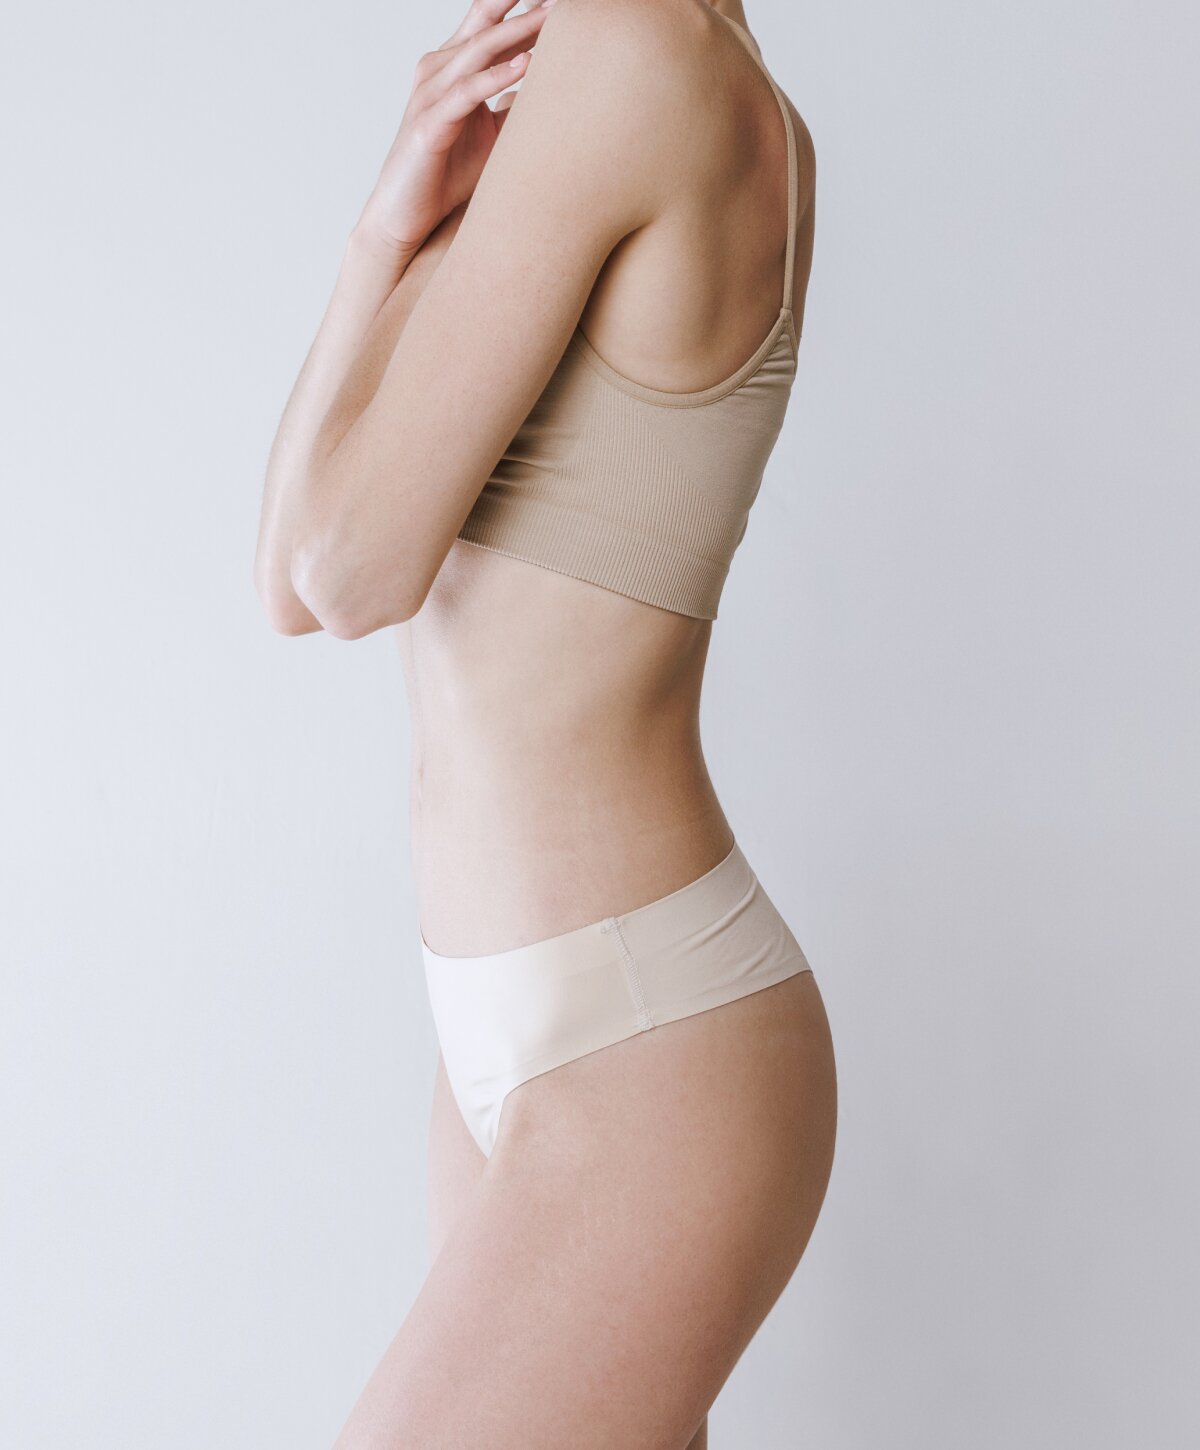 Miami liposuction model